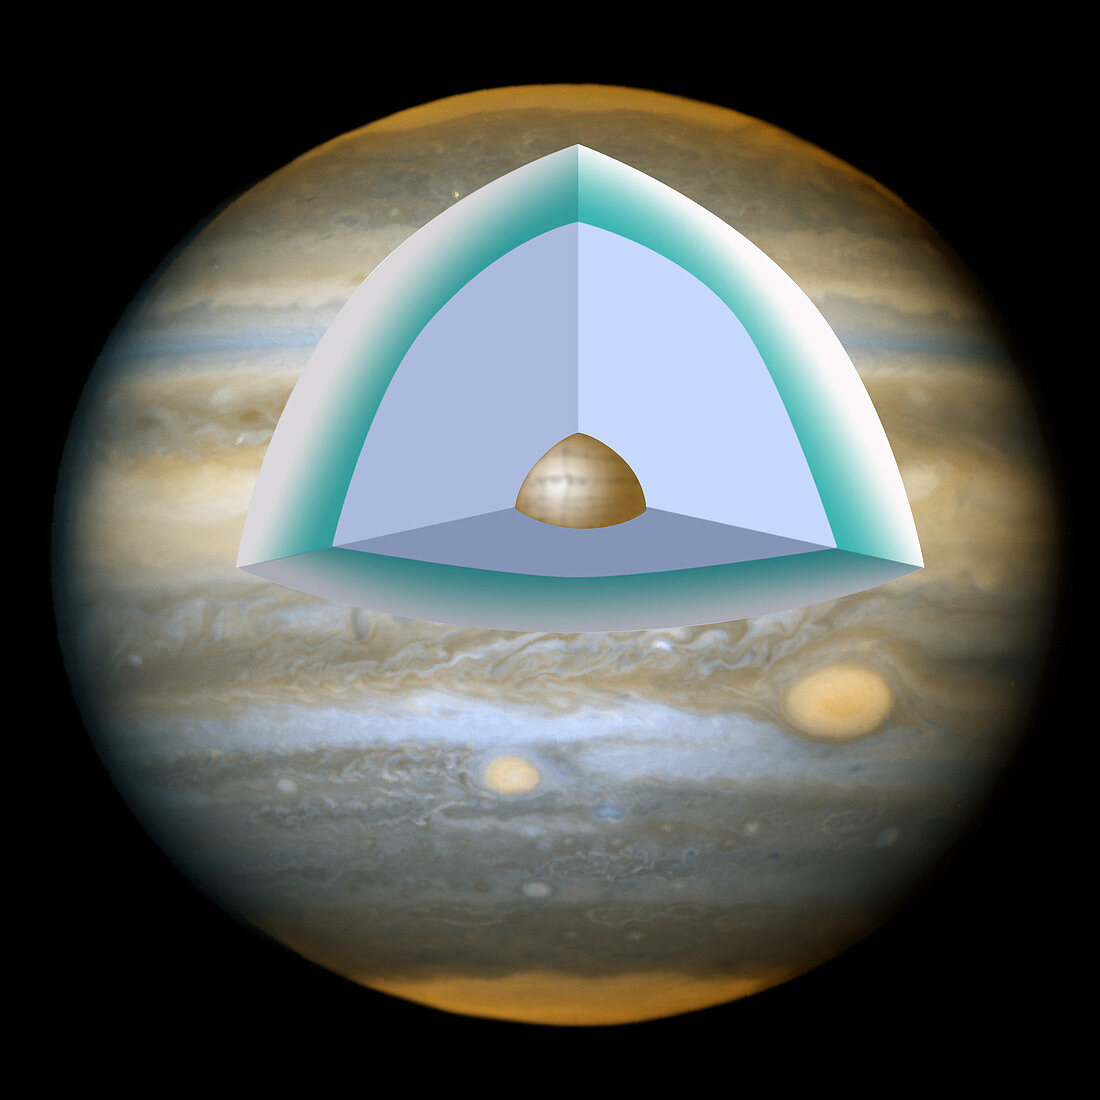 Jupiter's Interior